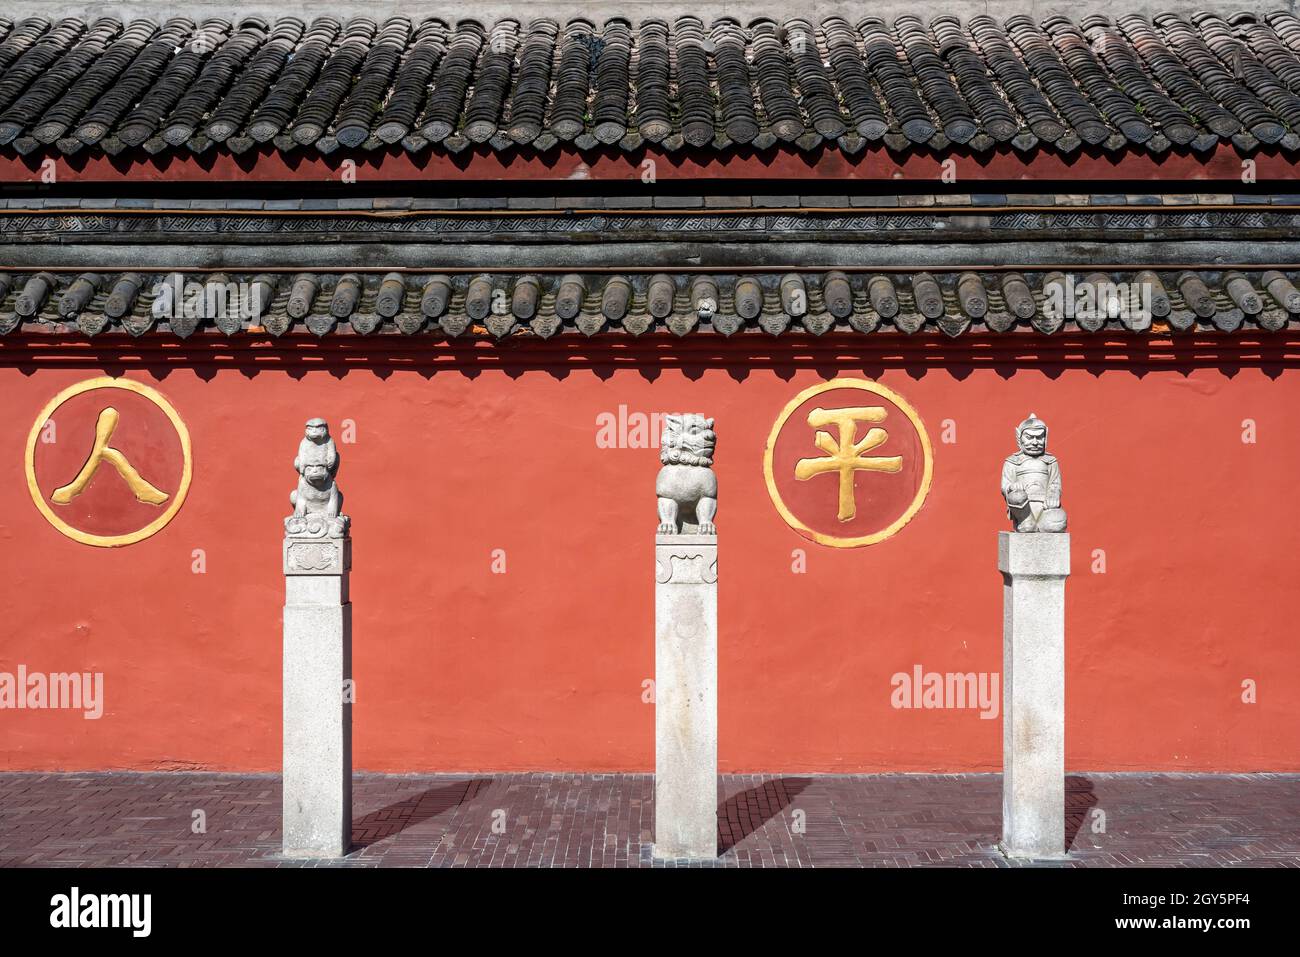 Chengdu, provincia di Sichuan, Cina - 28 settembre 2021 : tre statue di fronte alla parete rossa circostante del monastero buddista di Wenshu con i caratteri cinesi - ren ping- significa pace della gente. Foto Stock